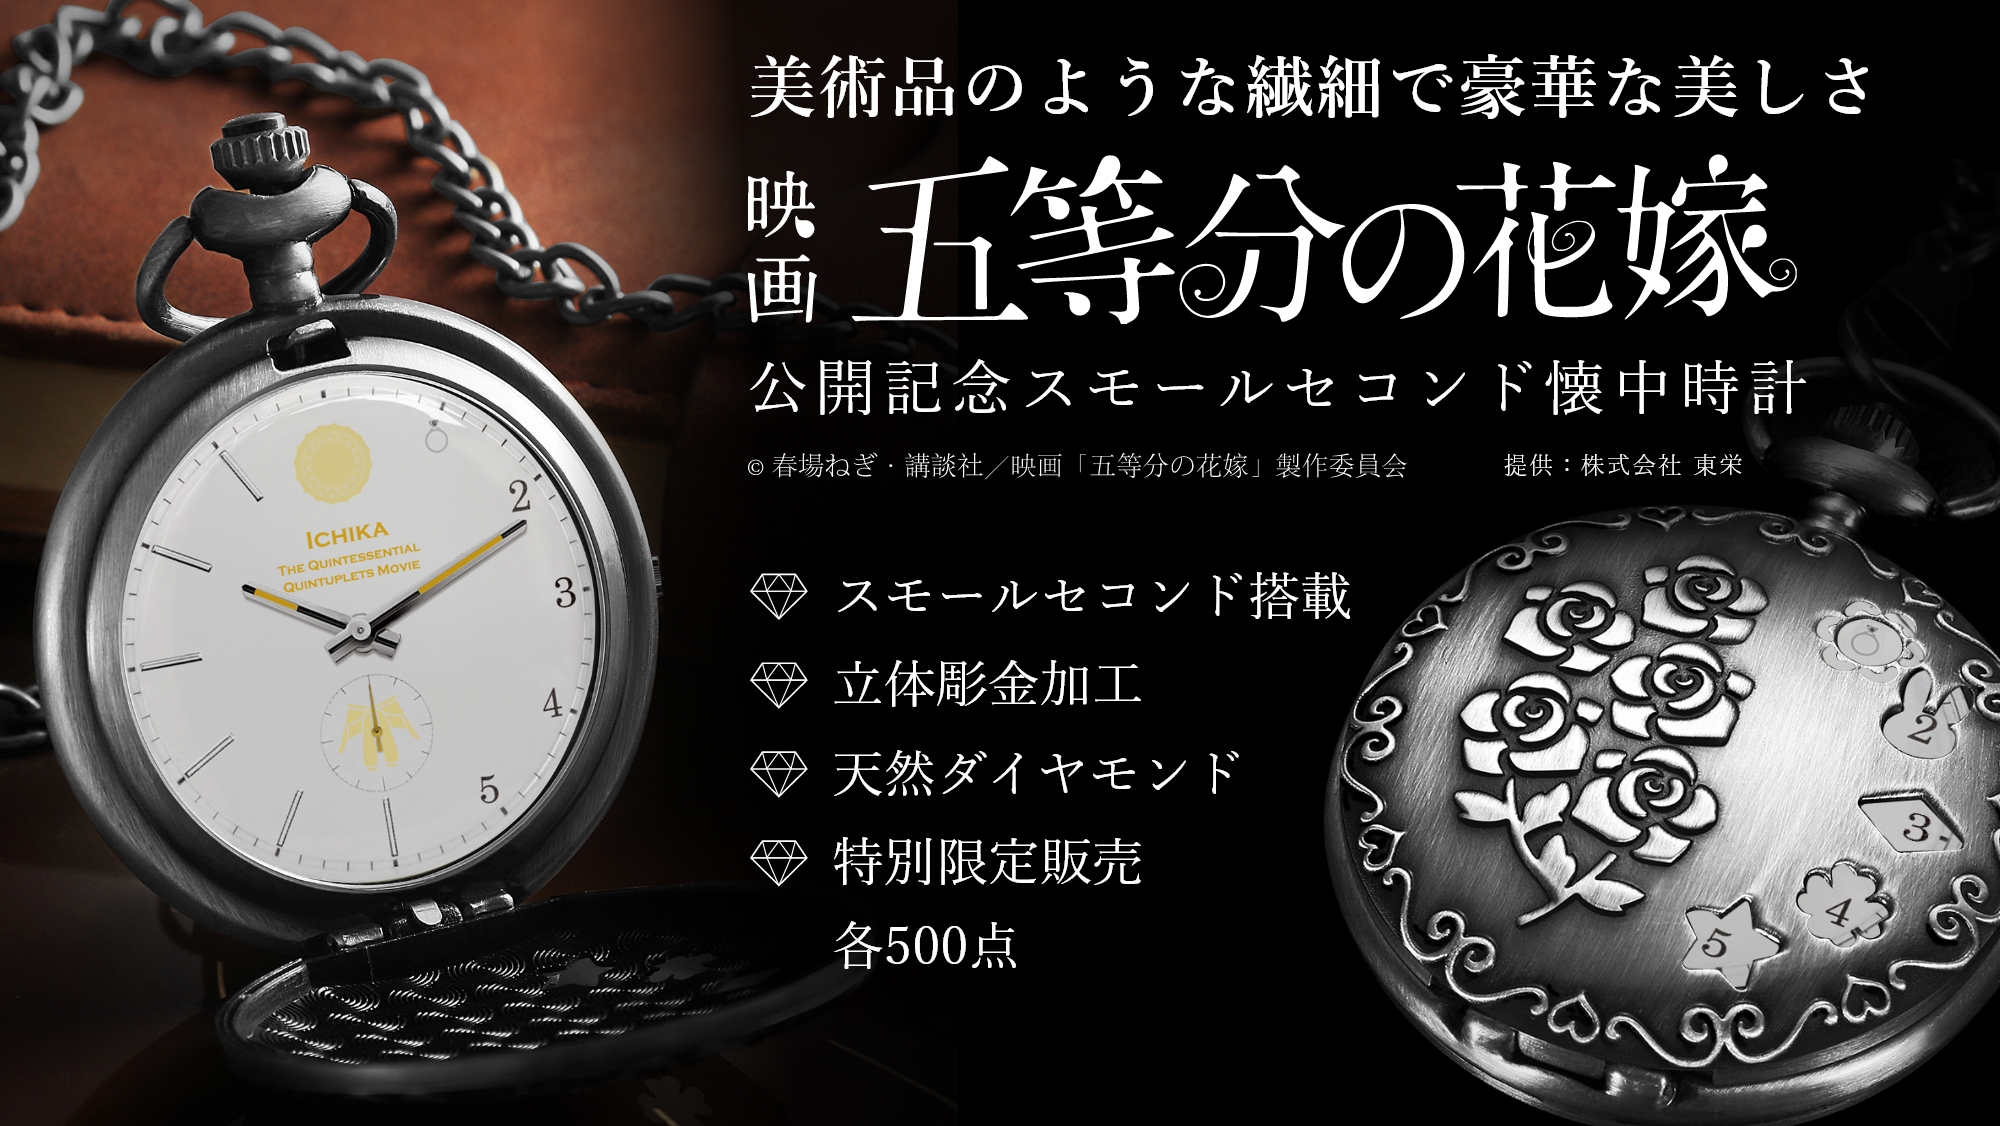 映画「五等分の花嫁」公開記念スモールセコンド付き懐中時計